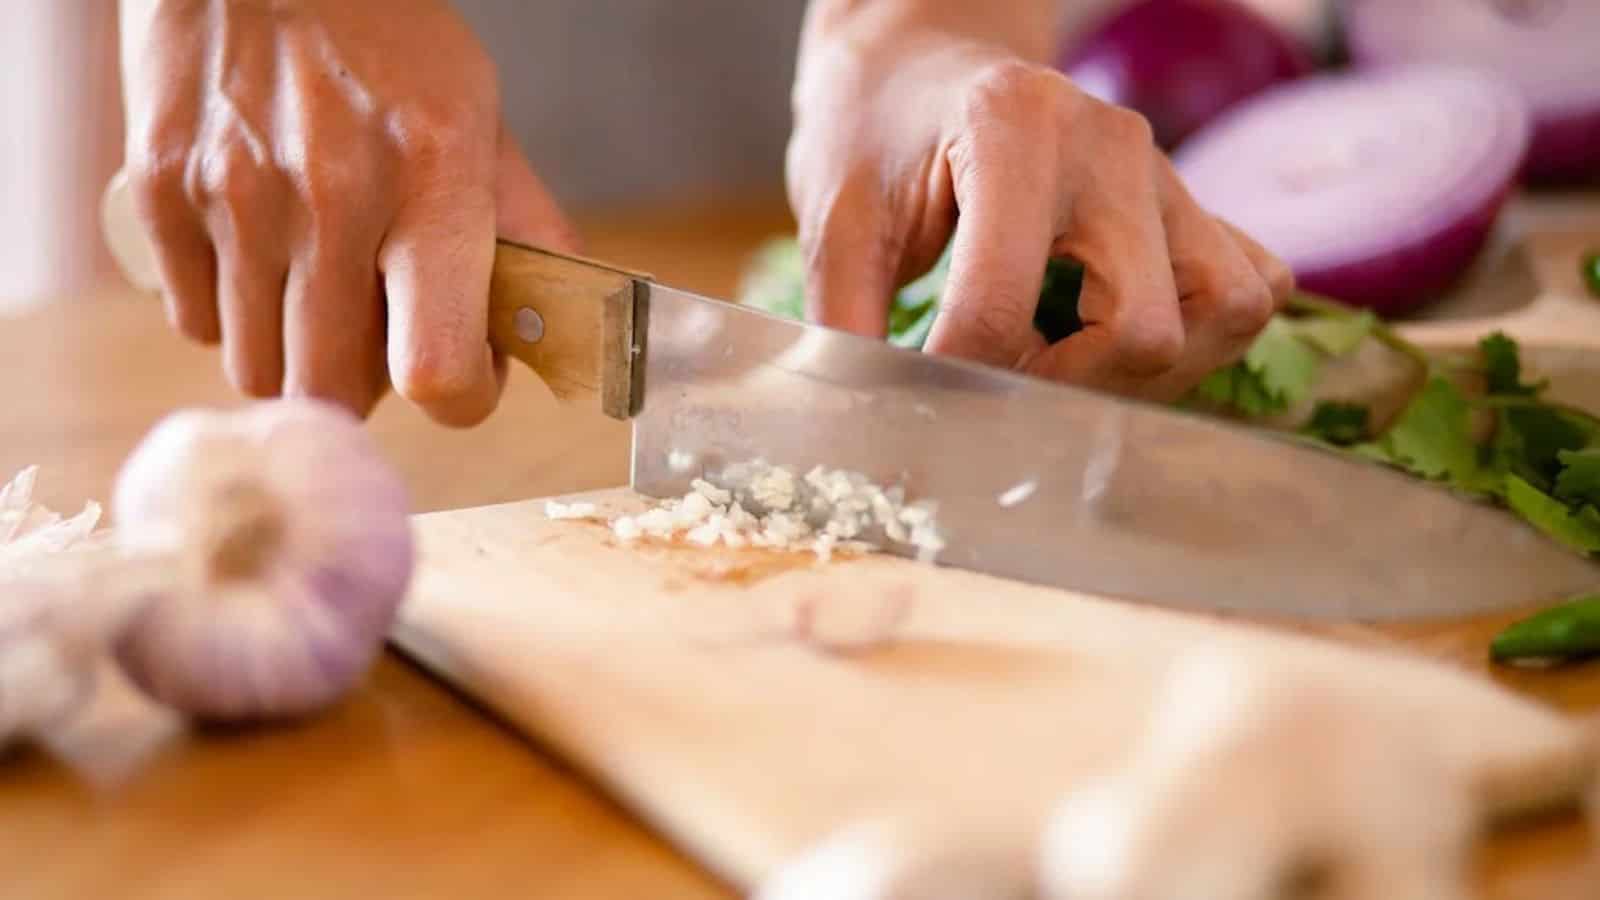 A Person Chopping Garlic.